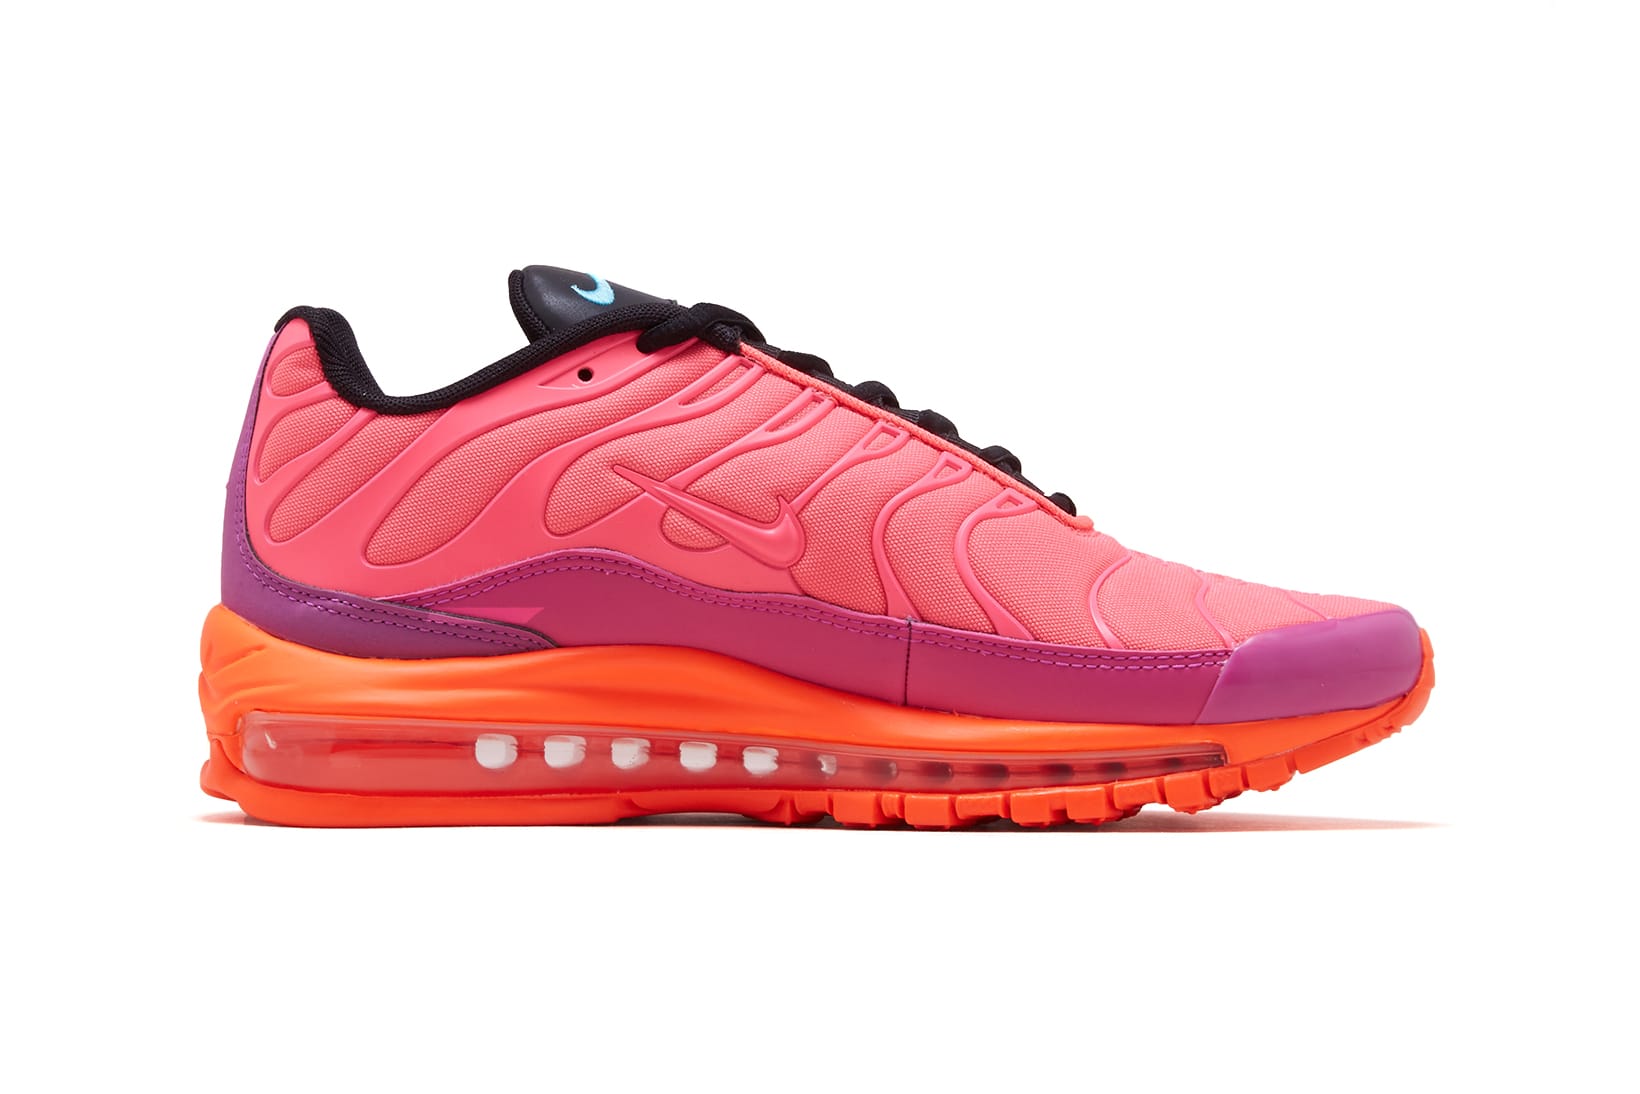 Nike Drops Bright Pink Air Max 97 Plus 